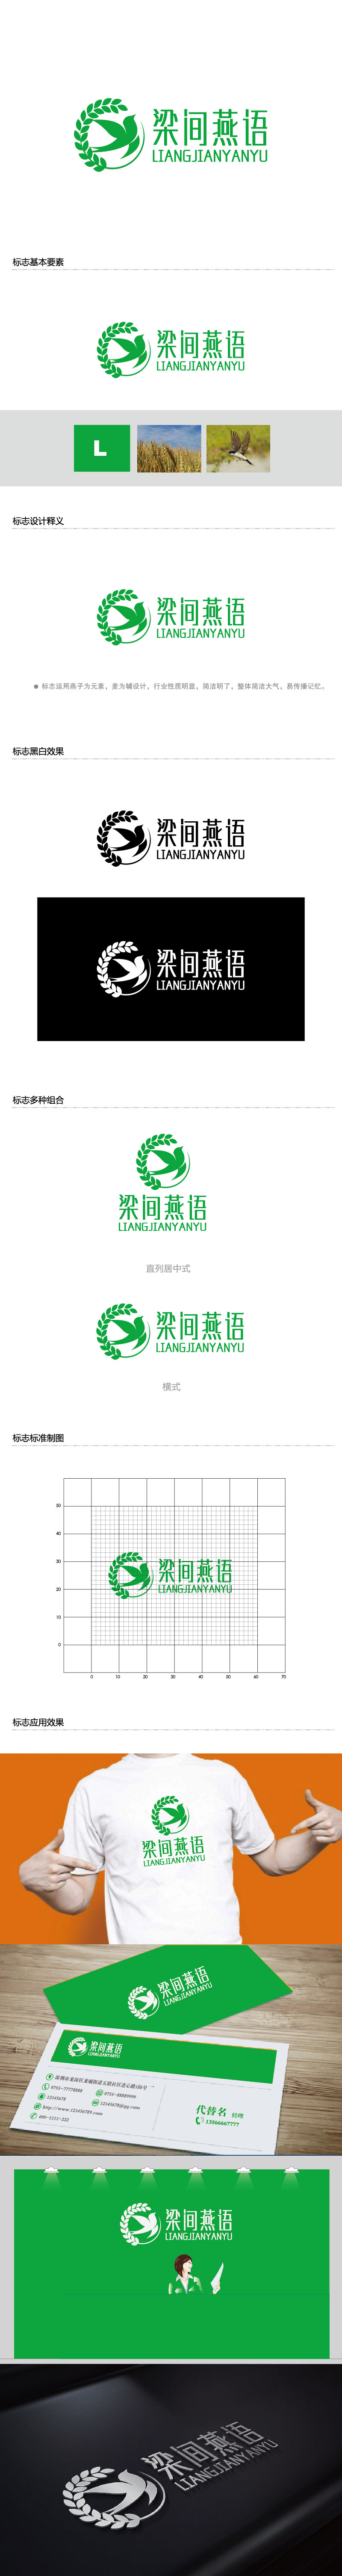 李贺的梁间燕语食品销售logo设计